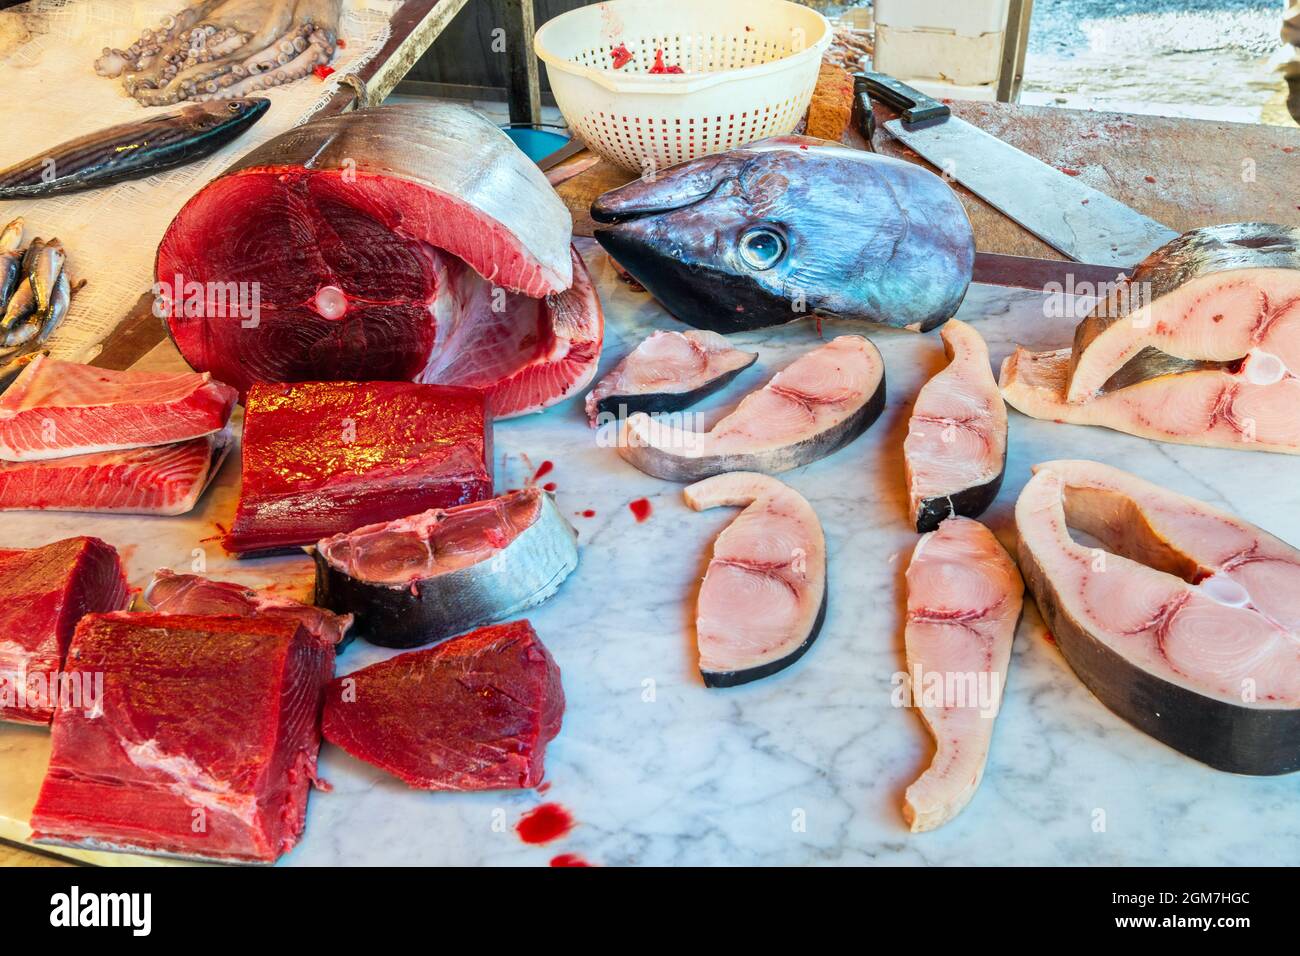 Fresh tuna and swordfish in a tray at the Catania fish market La Pescheria di Sant Agata. Sicily, Italy Stock Photo